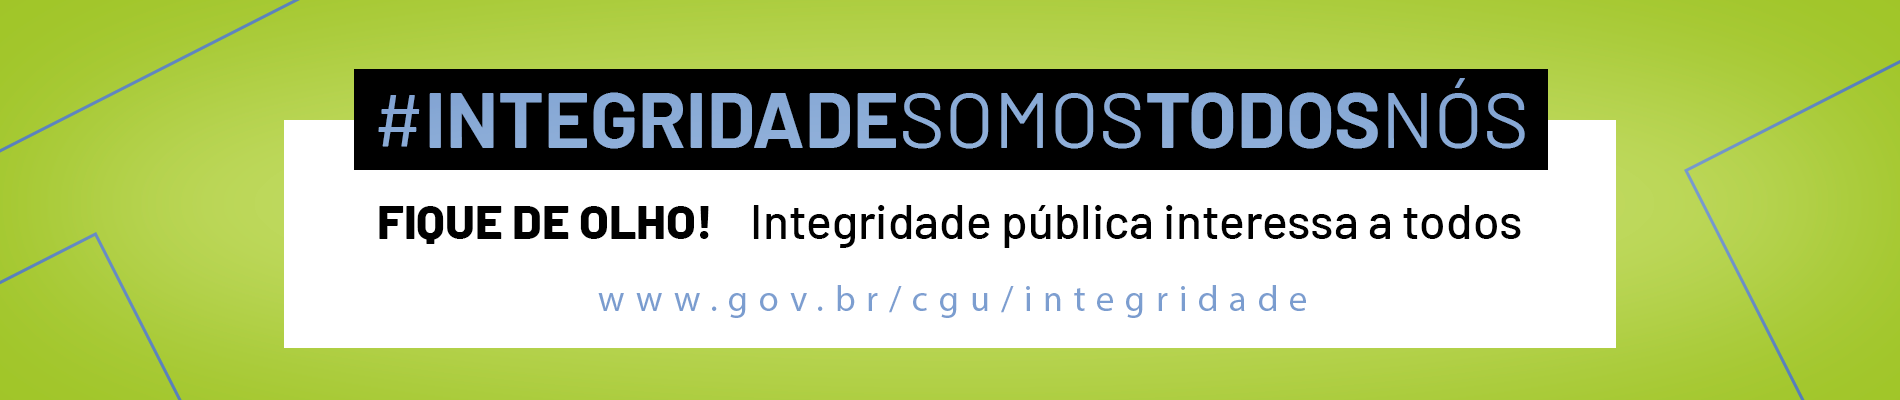 banner com a hashtag INTEGRIDADESOMOSTODOSNÓS